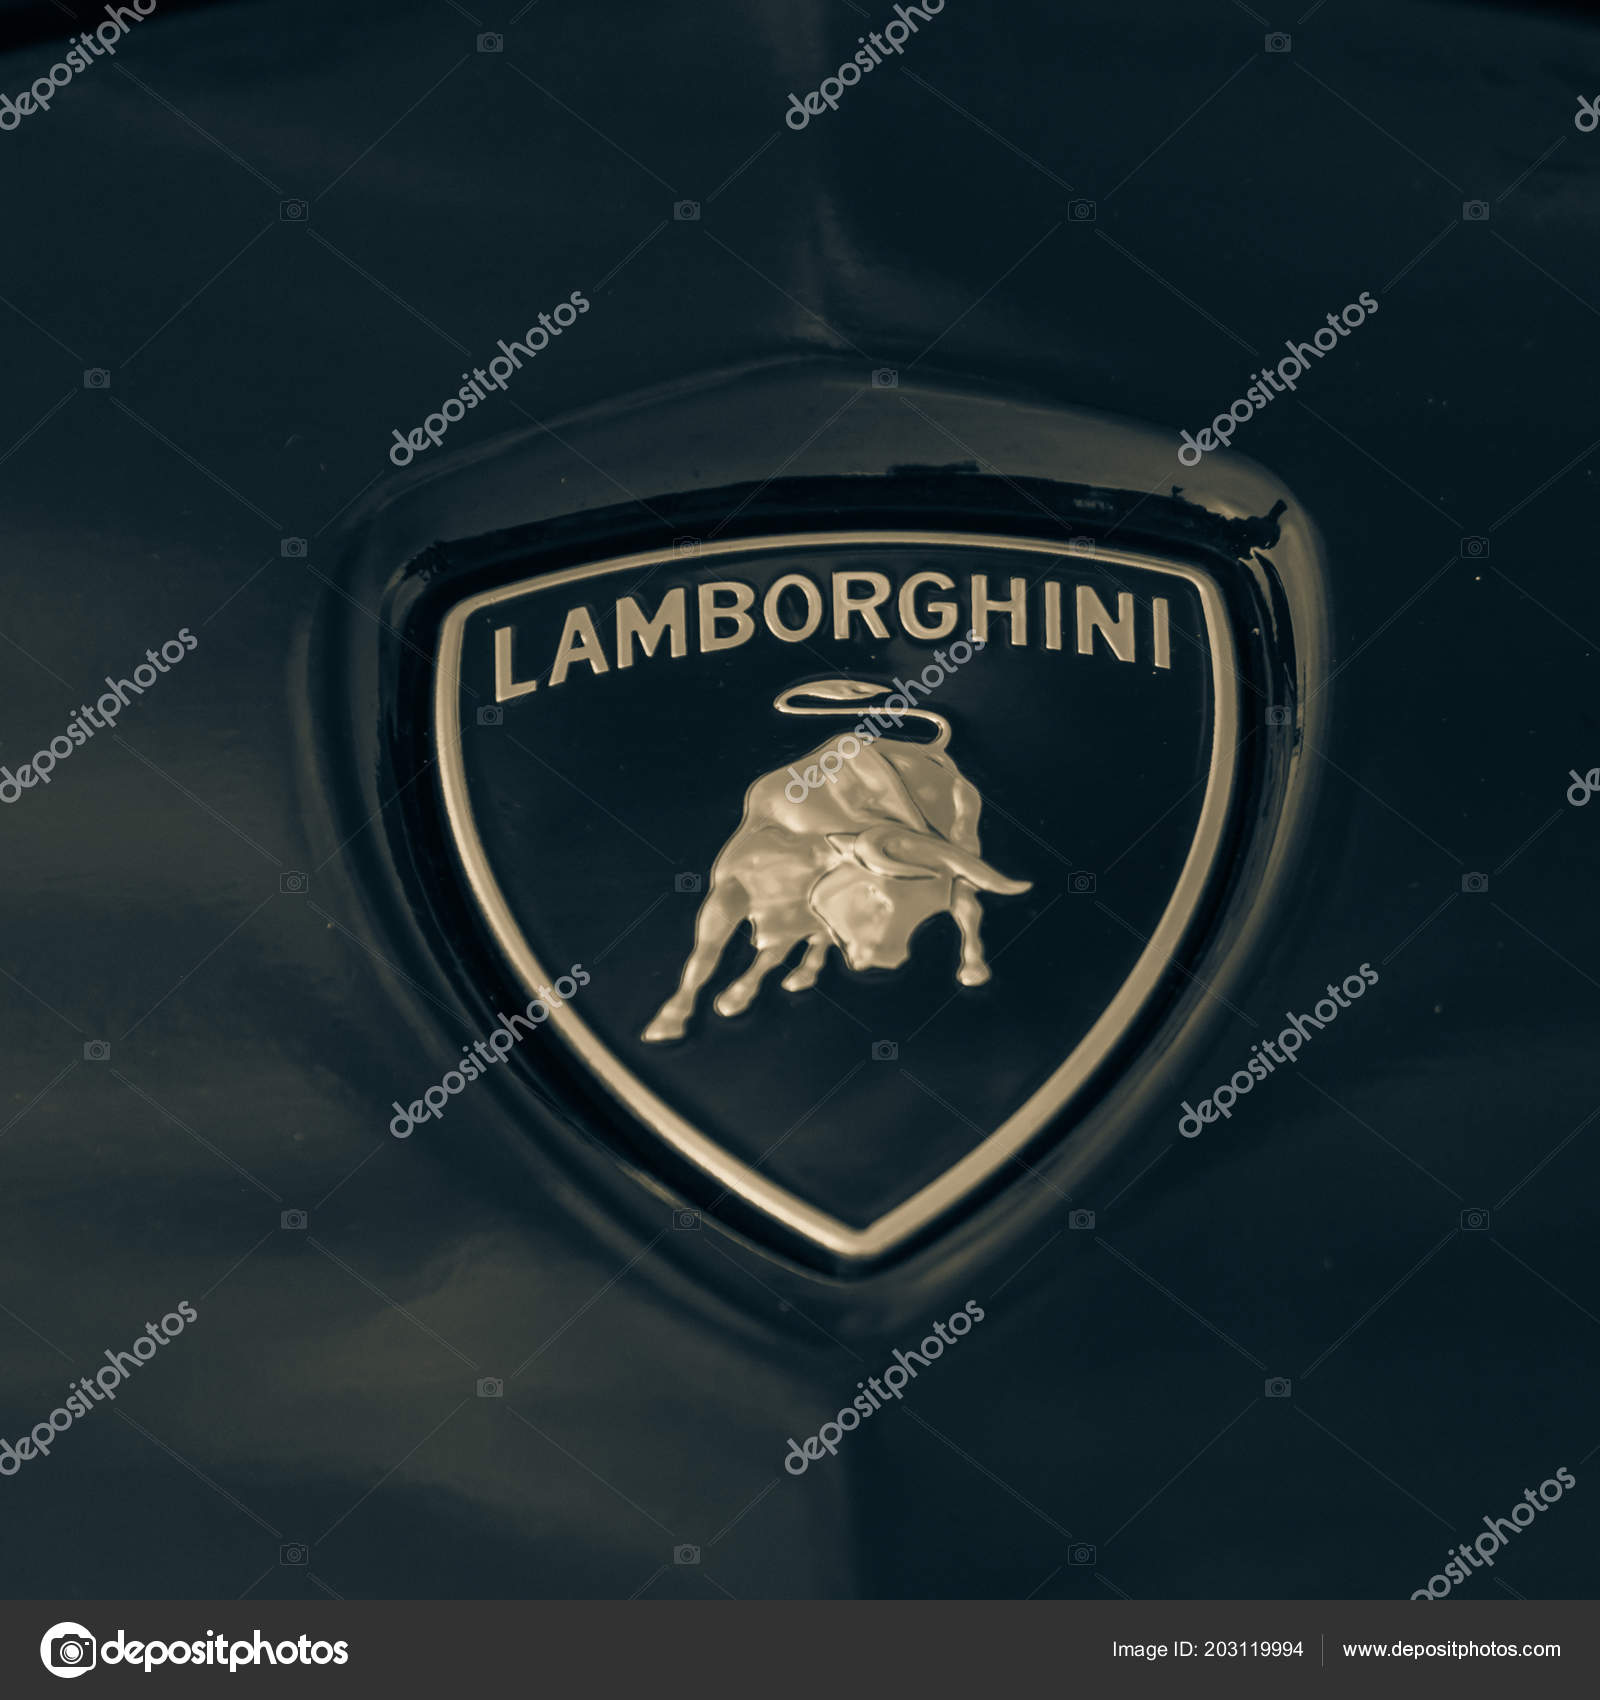 Lamborghini logo stok fotoğraflar | Lamborghini logo telifsiz resimler,  görseller | Depositphotos